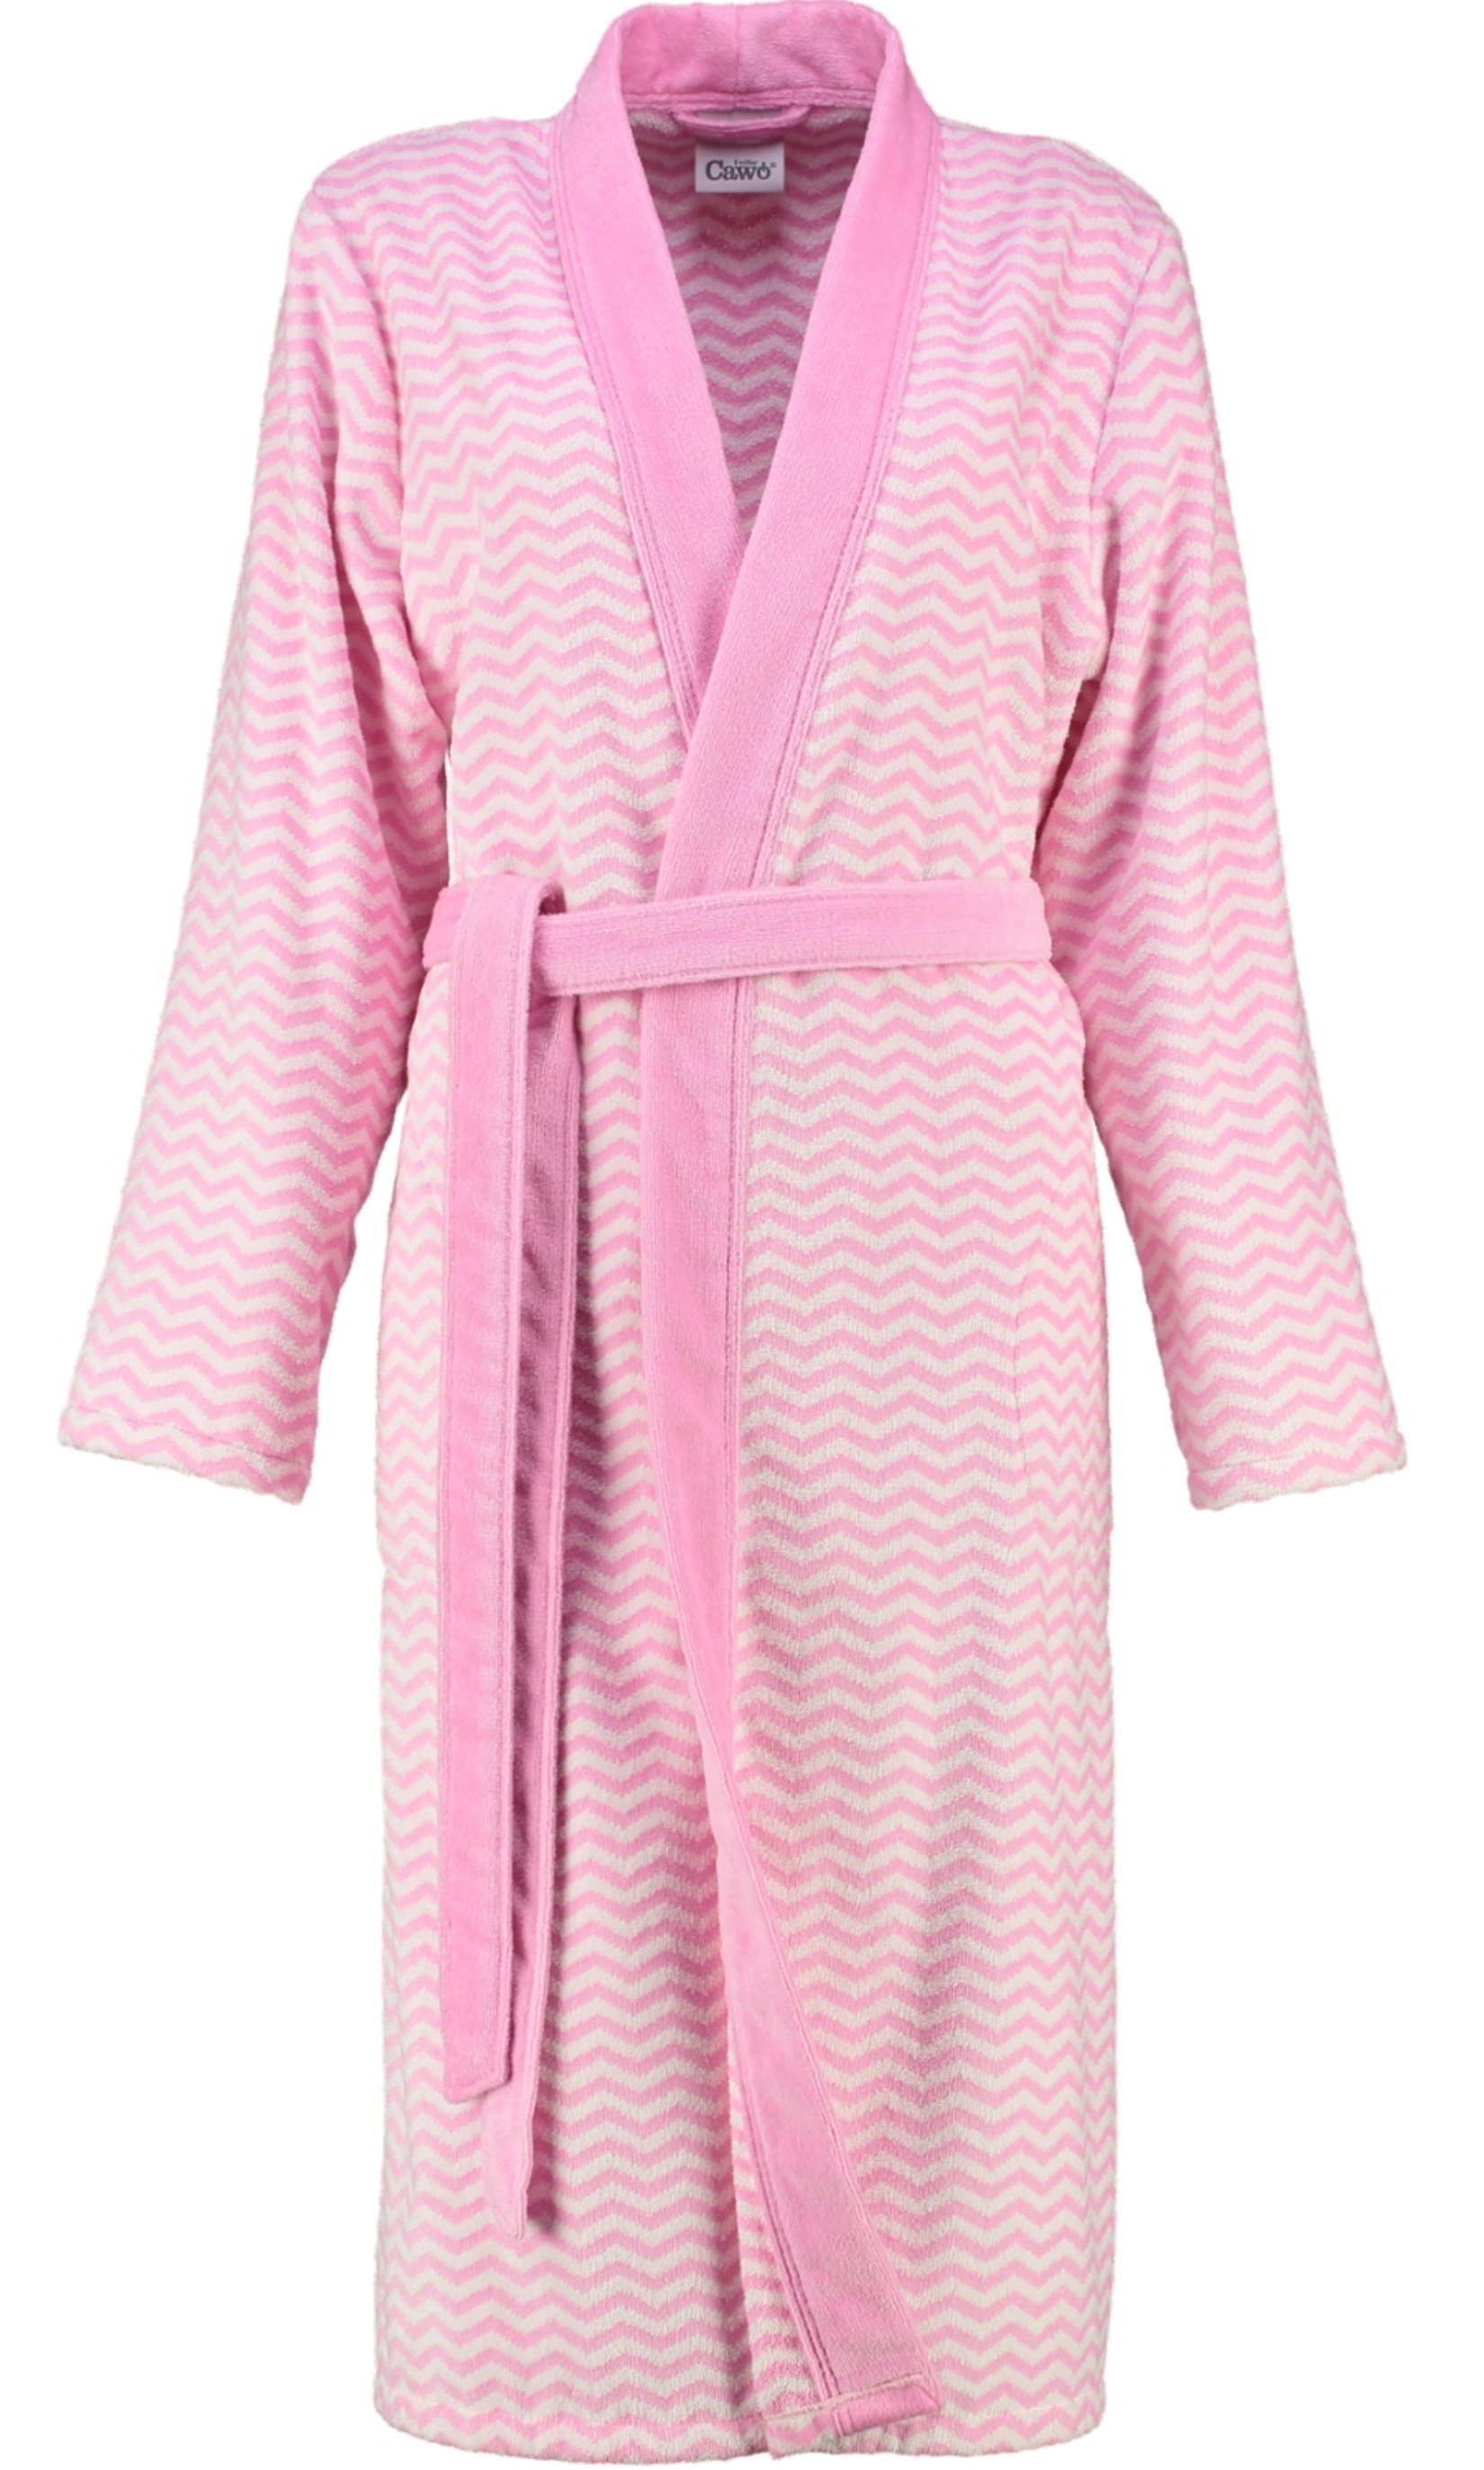 Damen Baumwolle, Kimono-Kragen, Gürtel, Damenbademantel Bademantel, Design Modisches Langform, Cawö